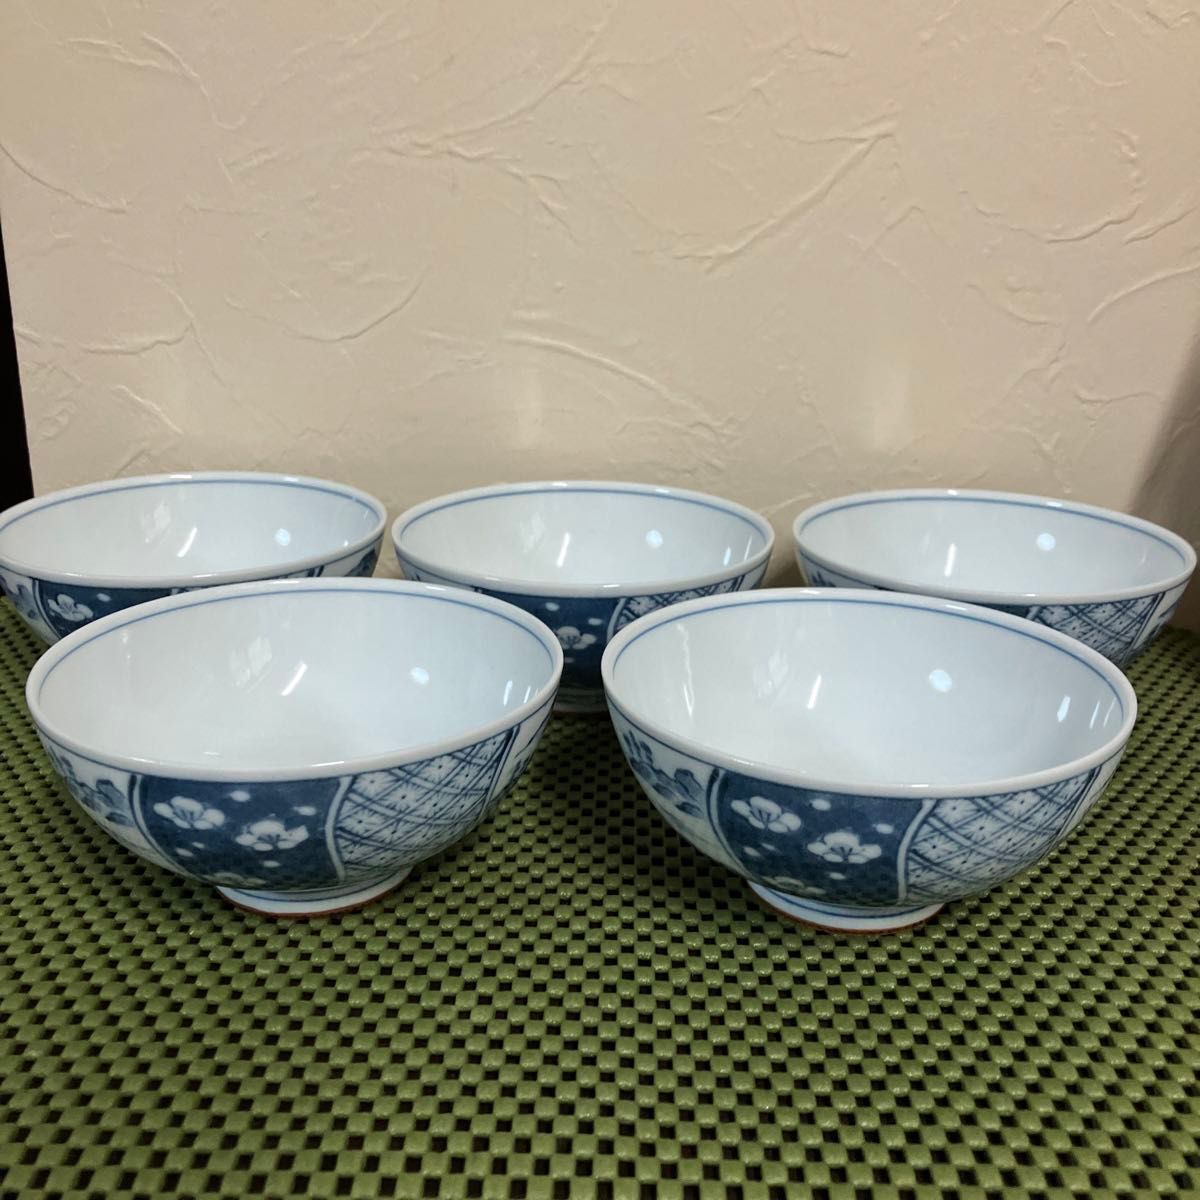 和食器 陶磁器 飯碗 茶碗 日本の伝統柄 五文様飯碗揃 波佐見焼 有田焼 茶器 食器 瀬戸物